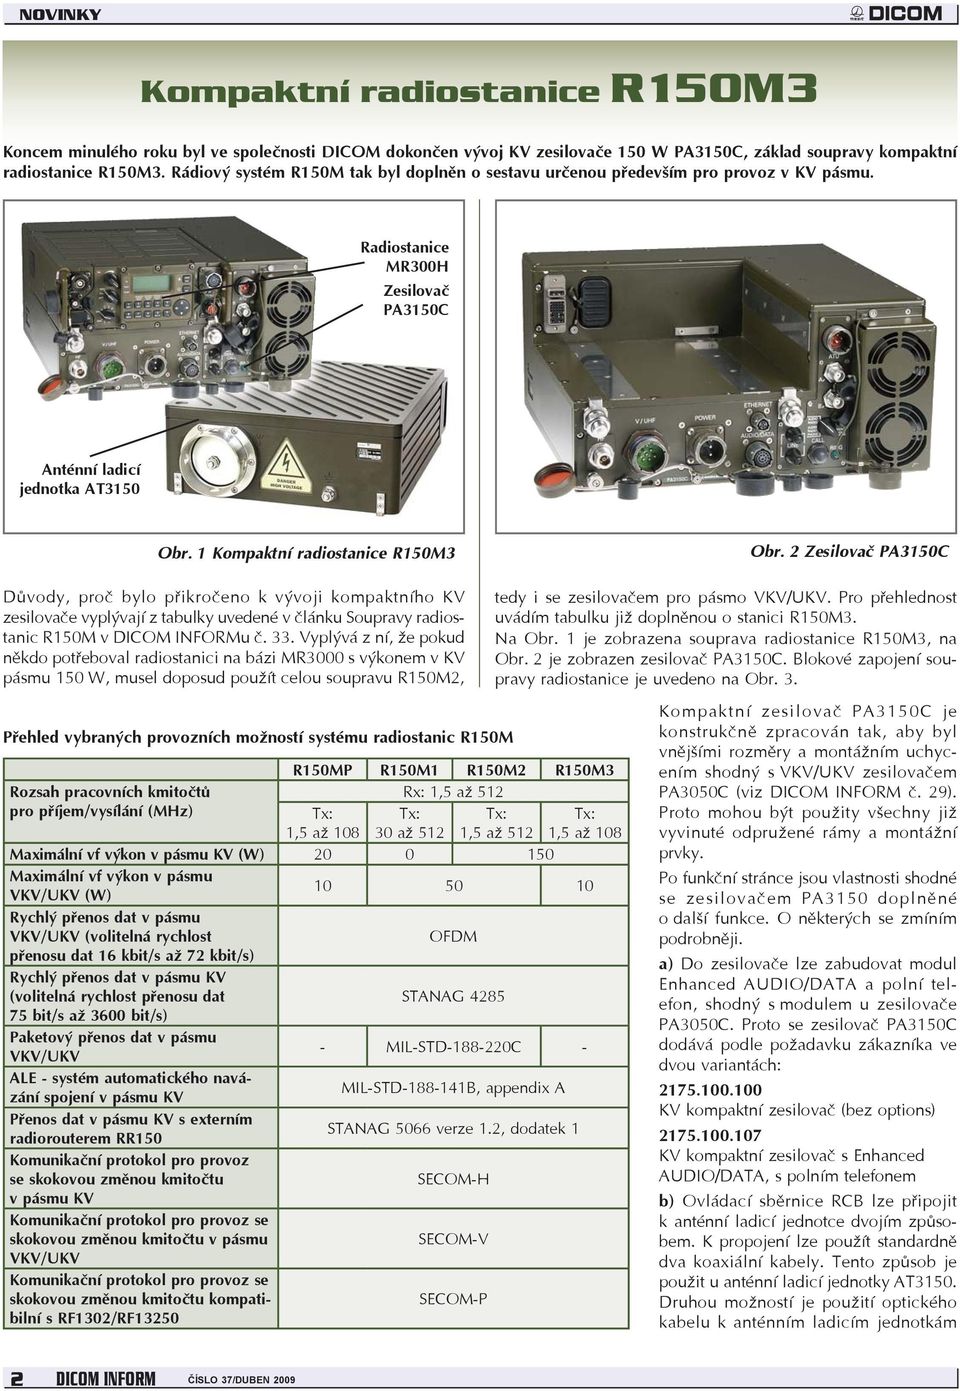 2 Zesilovač PA3150C Důvody, proč bylo přikročeno k vývoji kompaktního KV zesilovače vyplývají z tabulky uvedené v článku Soupravy radiostanic R150M v DICOM INFORMu č. 33.